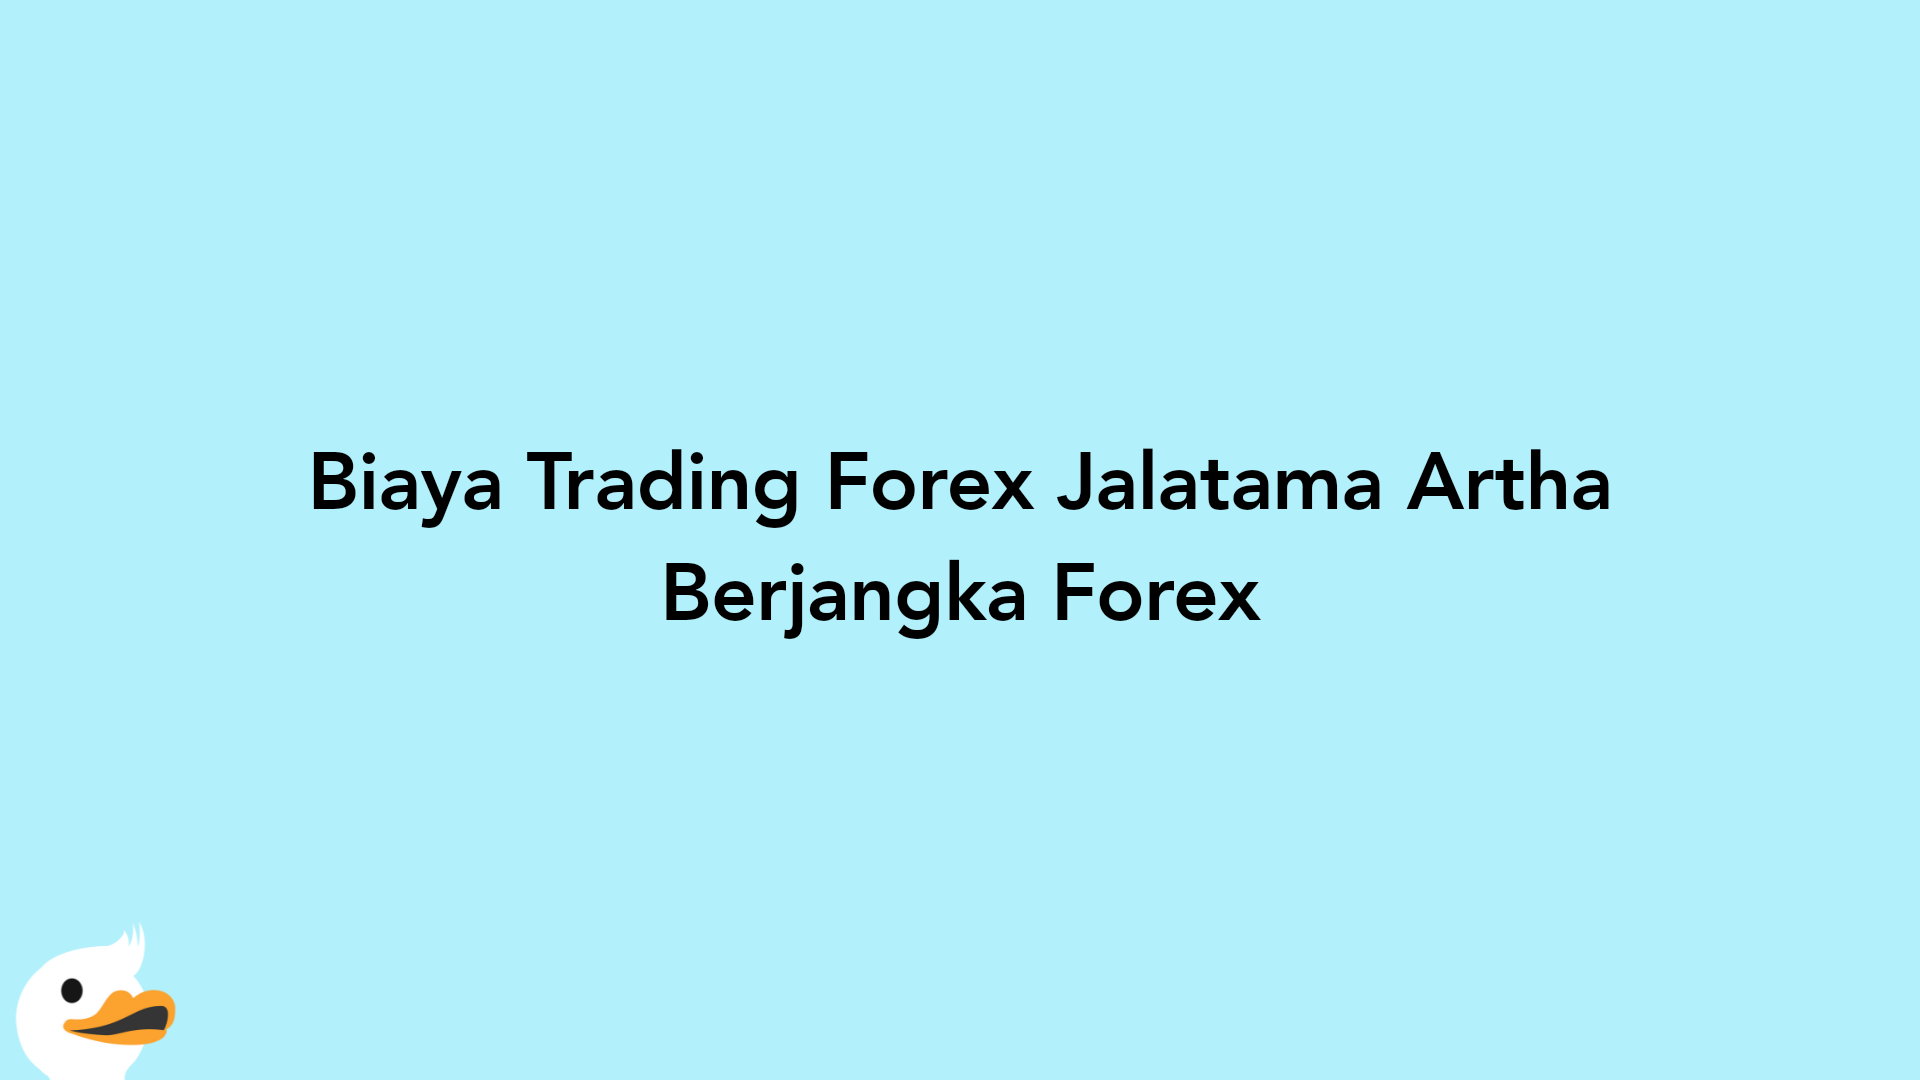 Biaya Trading Forex Jalatama Artha Berjangka Forex